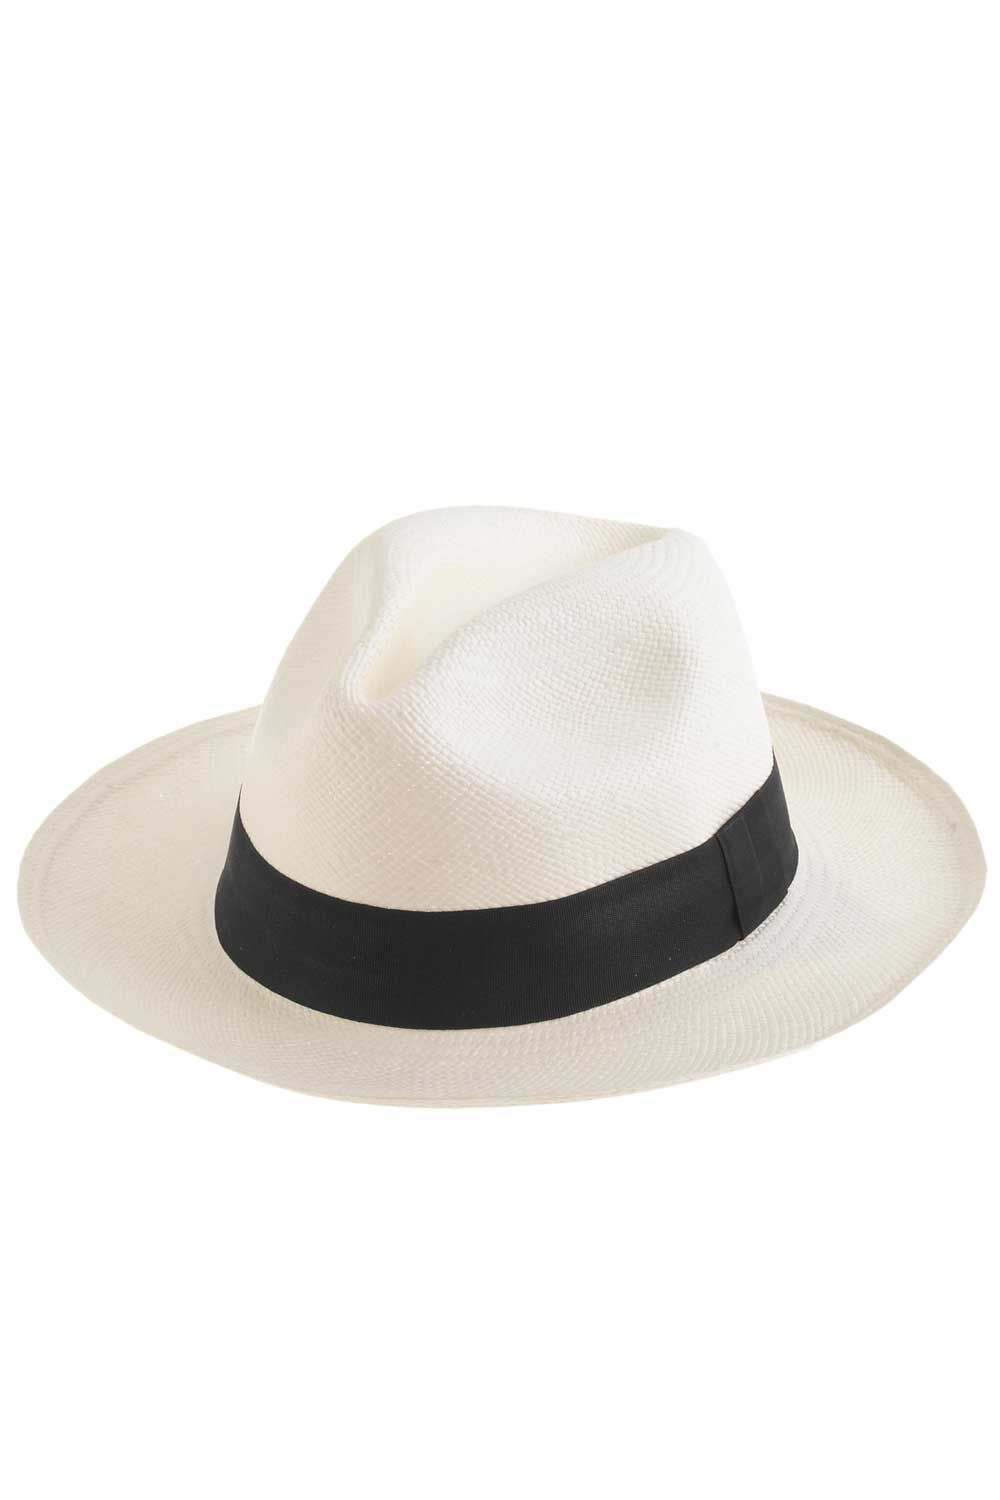 J. Crew Panama Hat